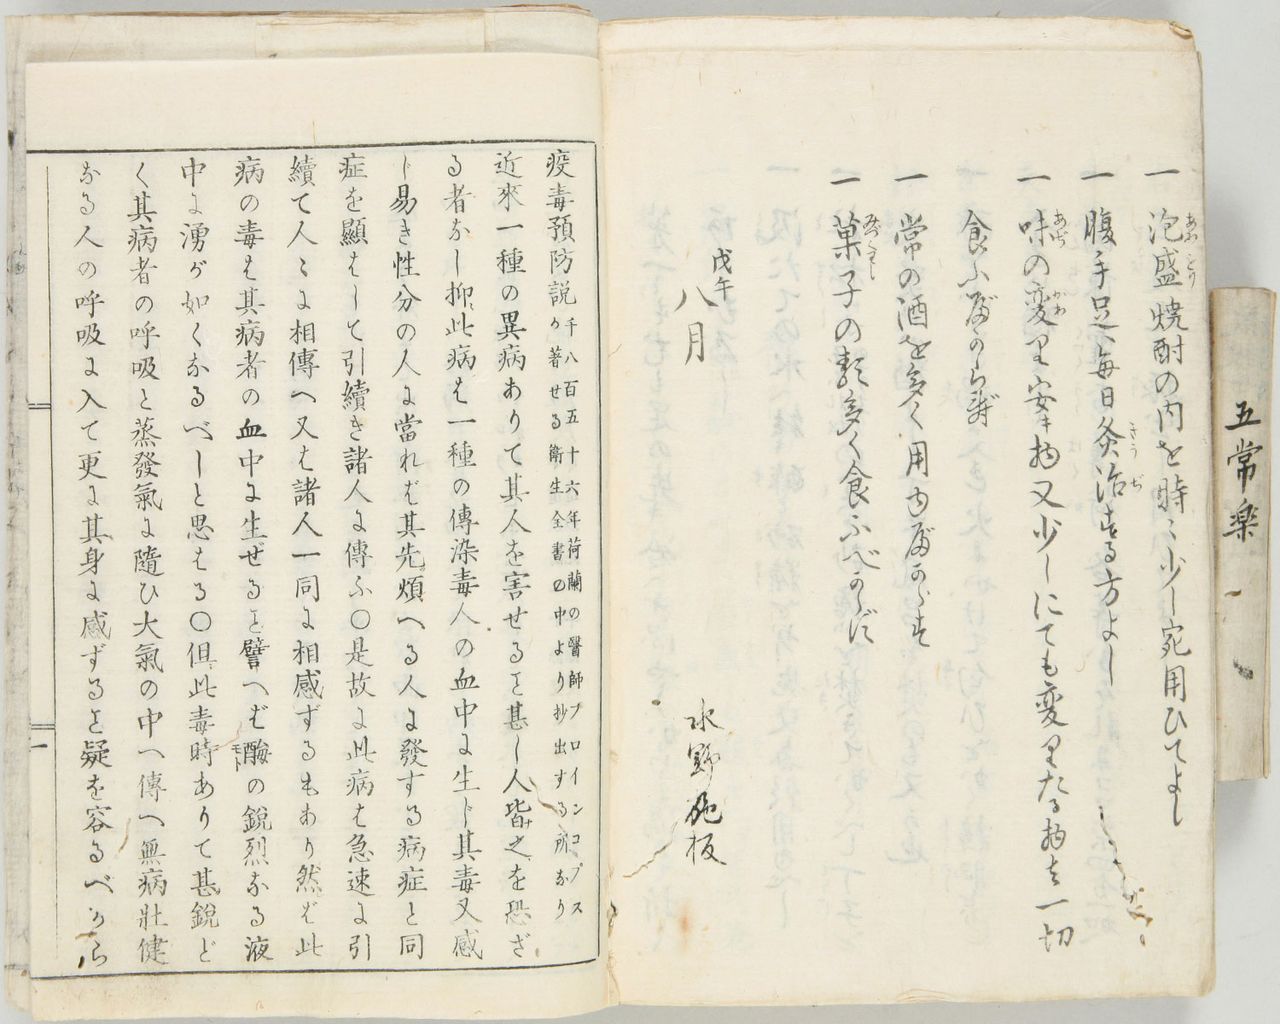  نسخة من (Ekidoku yobōsetsu) (طرق الوقاية من الأوبئة)، الكتاب الذي أُمر بنشره من قبل القيادة العسكرية للبلاد. (الصورة مقدمة من أرشيف اليابان الوطني)